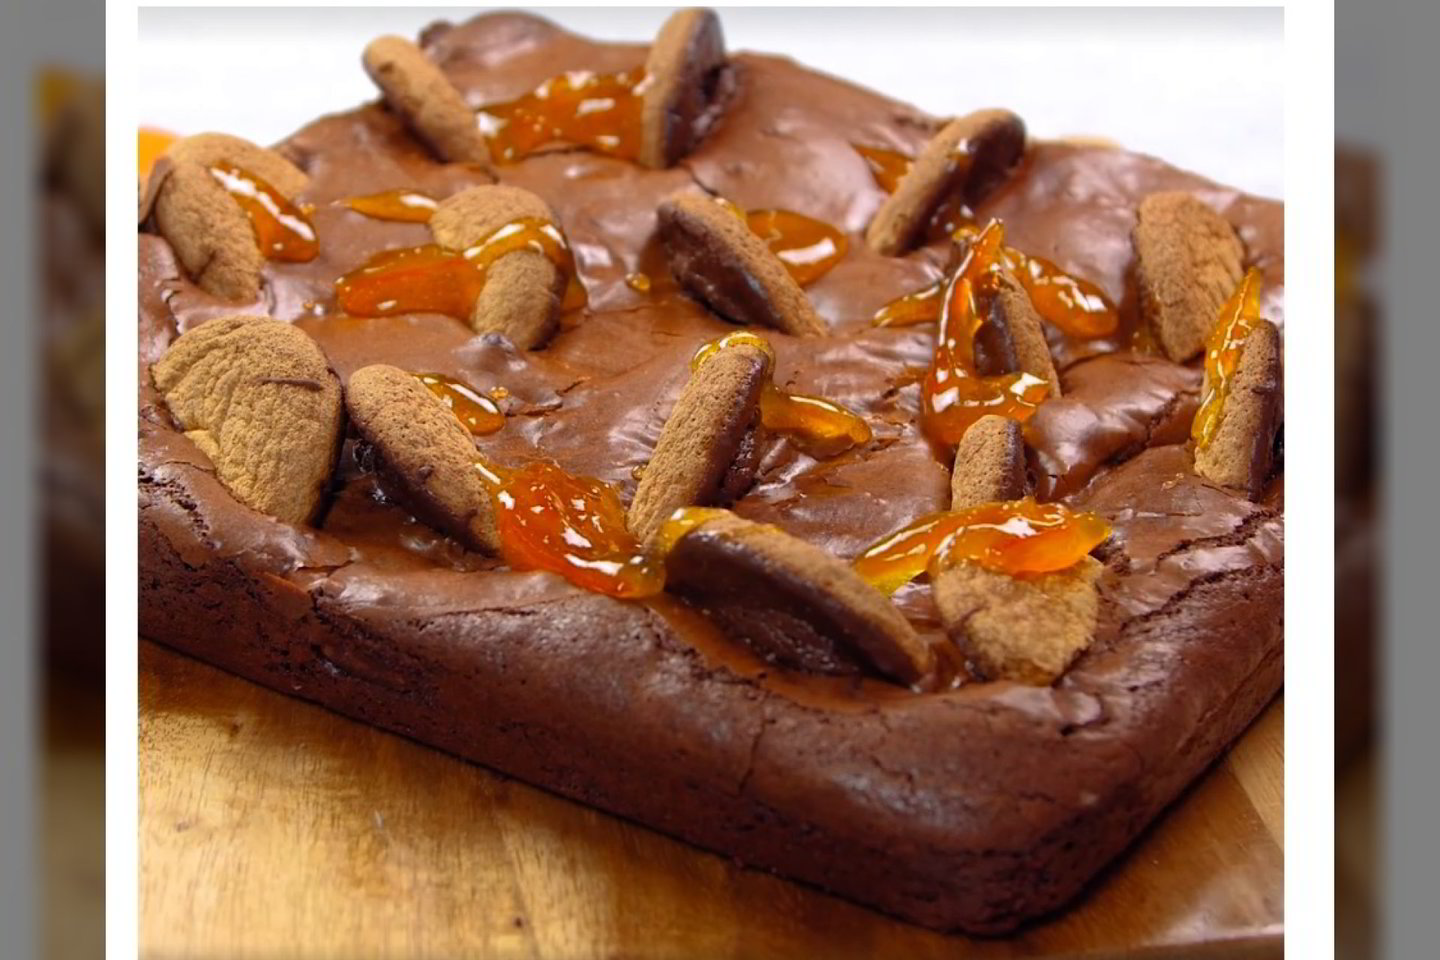 Drėgnas šokoladinis pyragas su „Jaffa“ sausainiais.<br> Stop kadras (facebook.com/GOODHOUSEKEEPING)